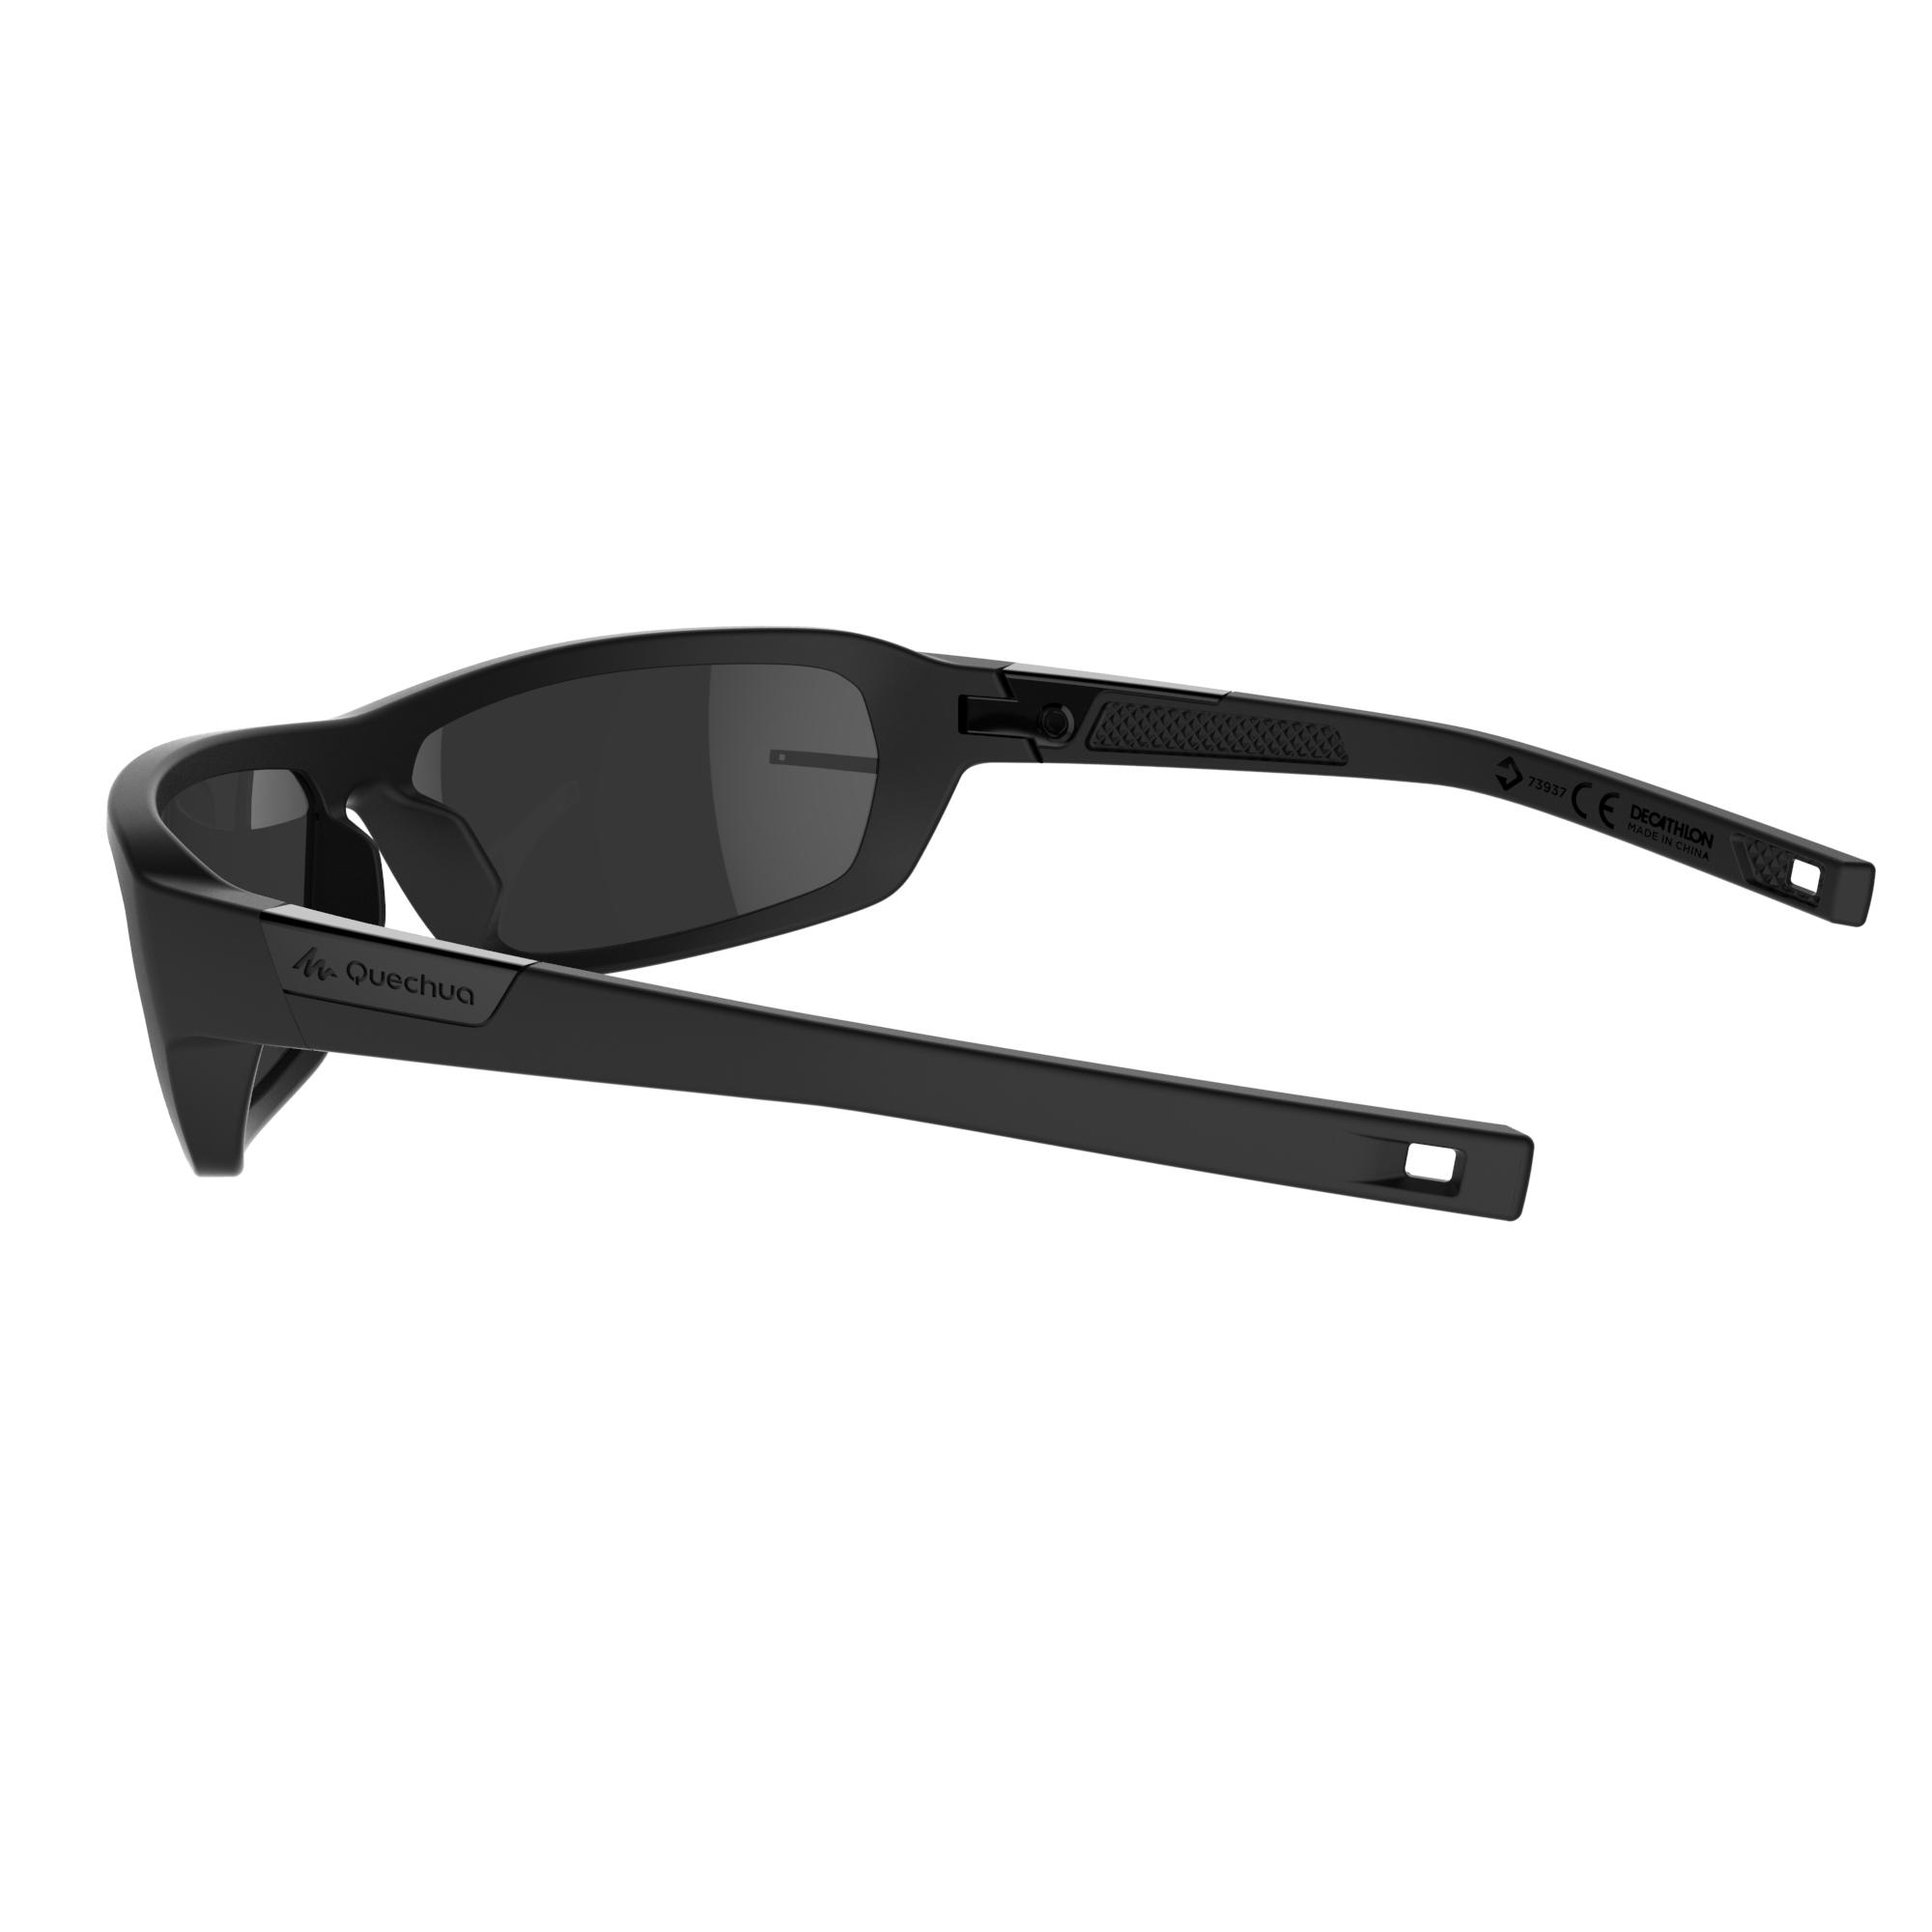 decathlon sunglasses india